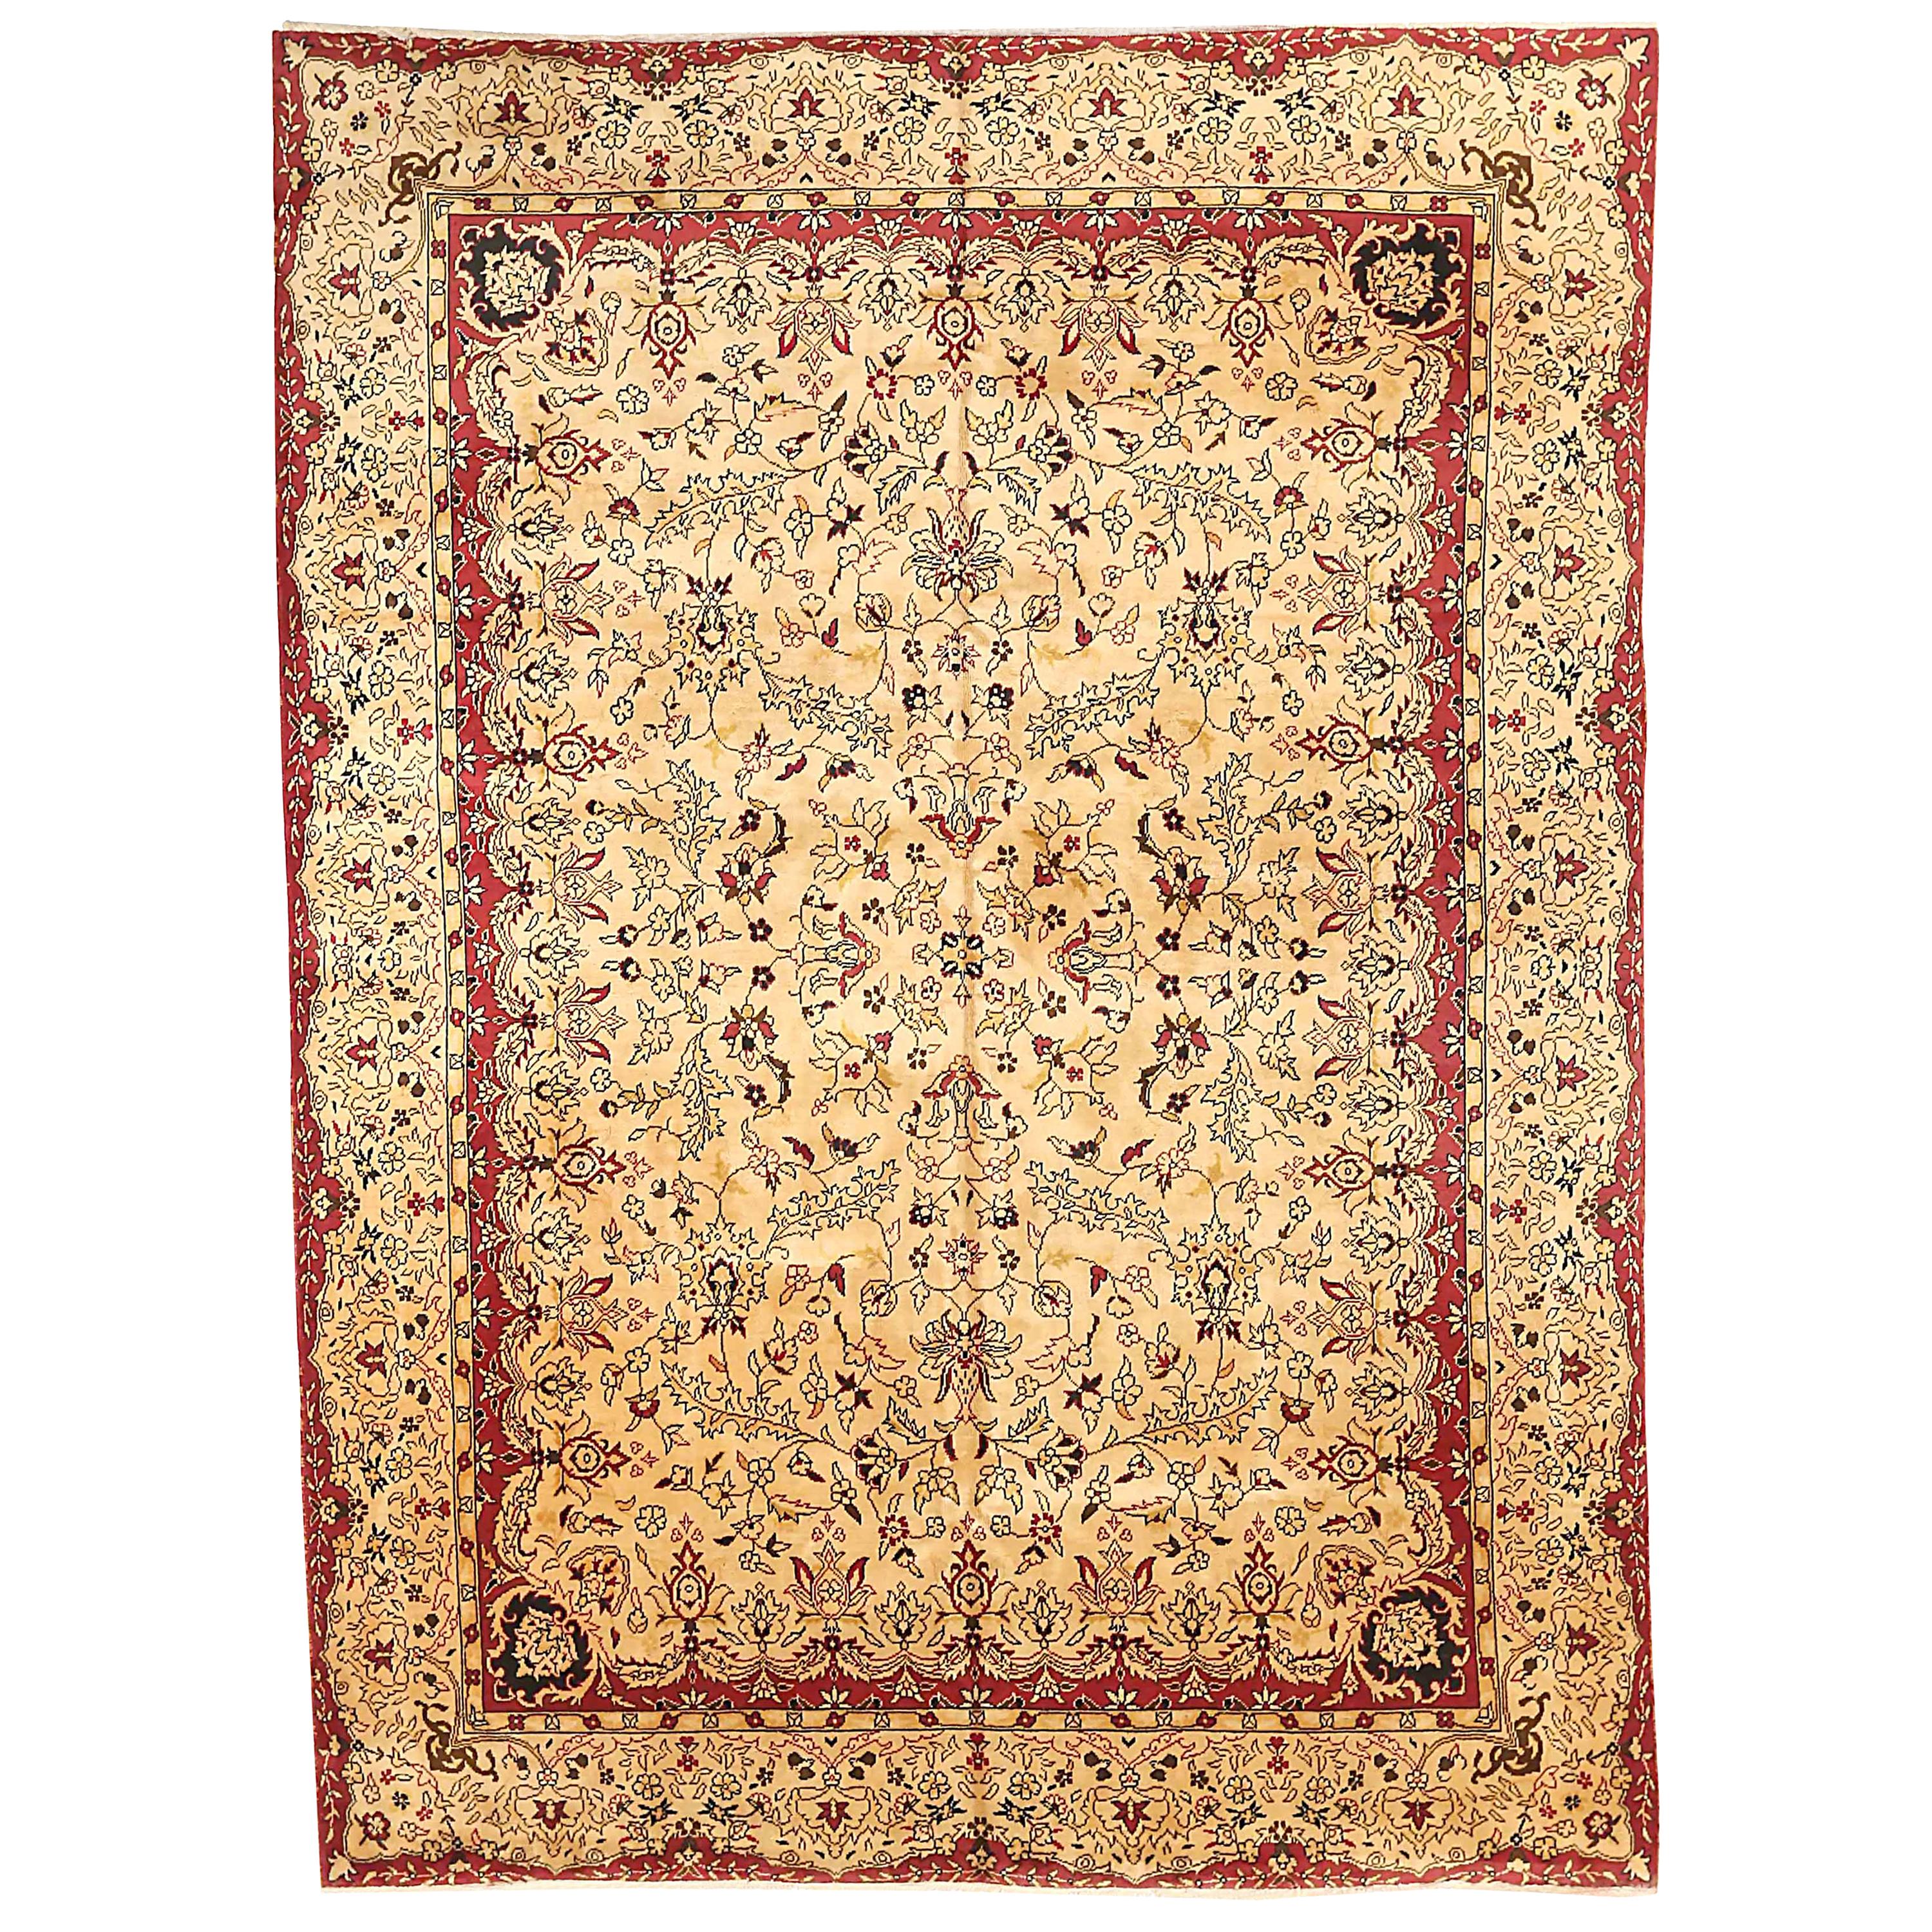 Antiker russischer Teppich im Tabriz-Design, antik